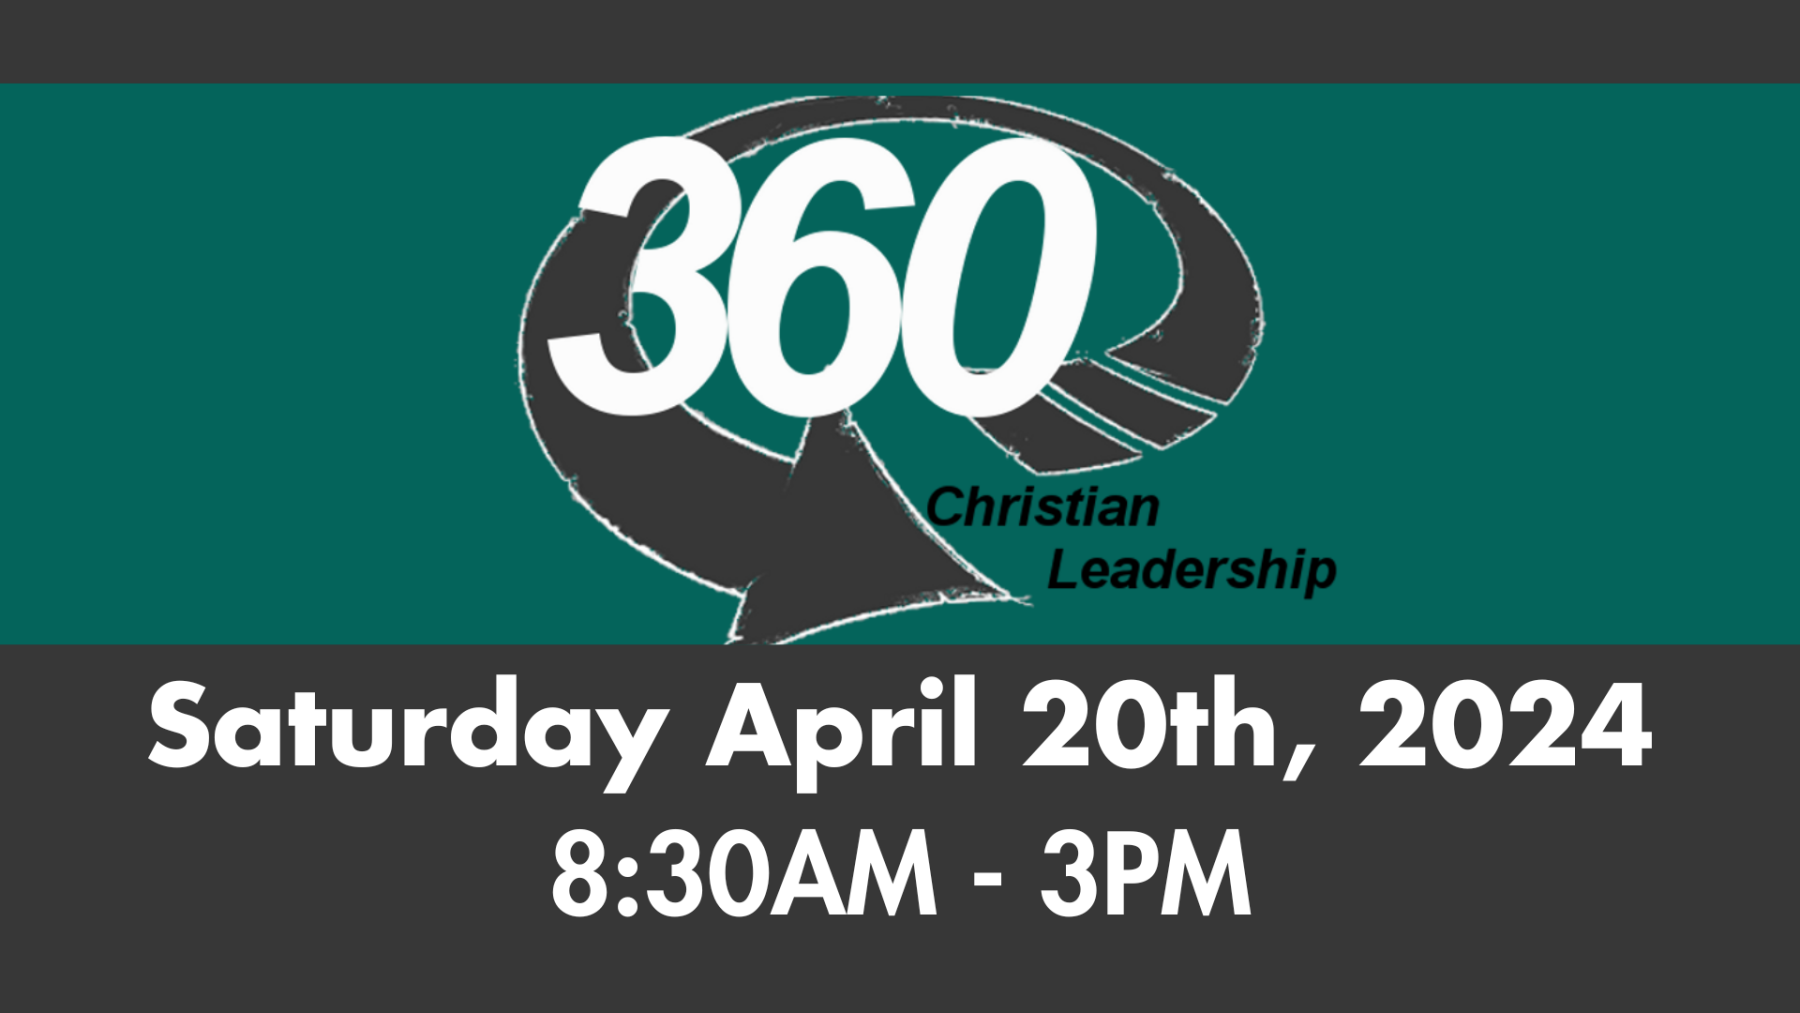 Leadership 360 event